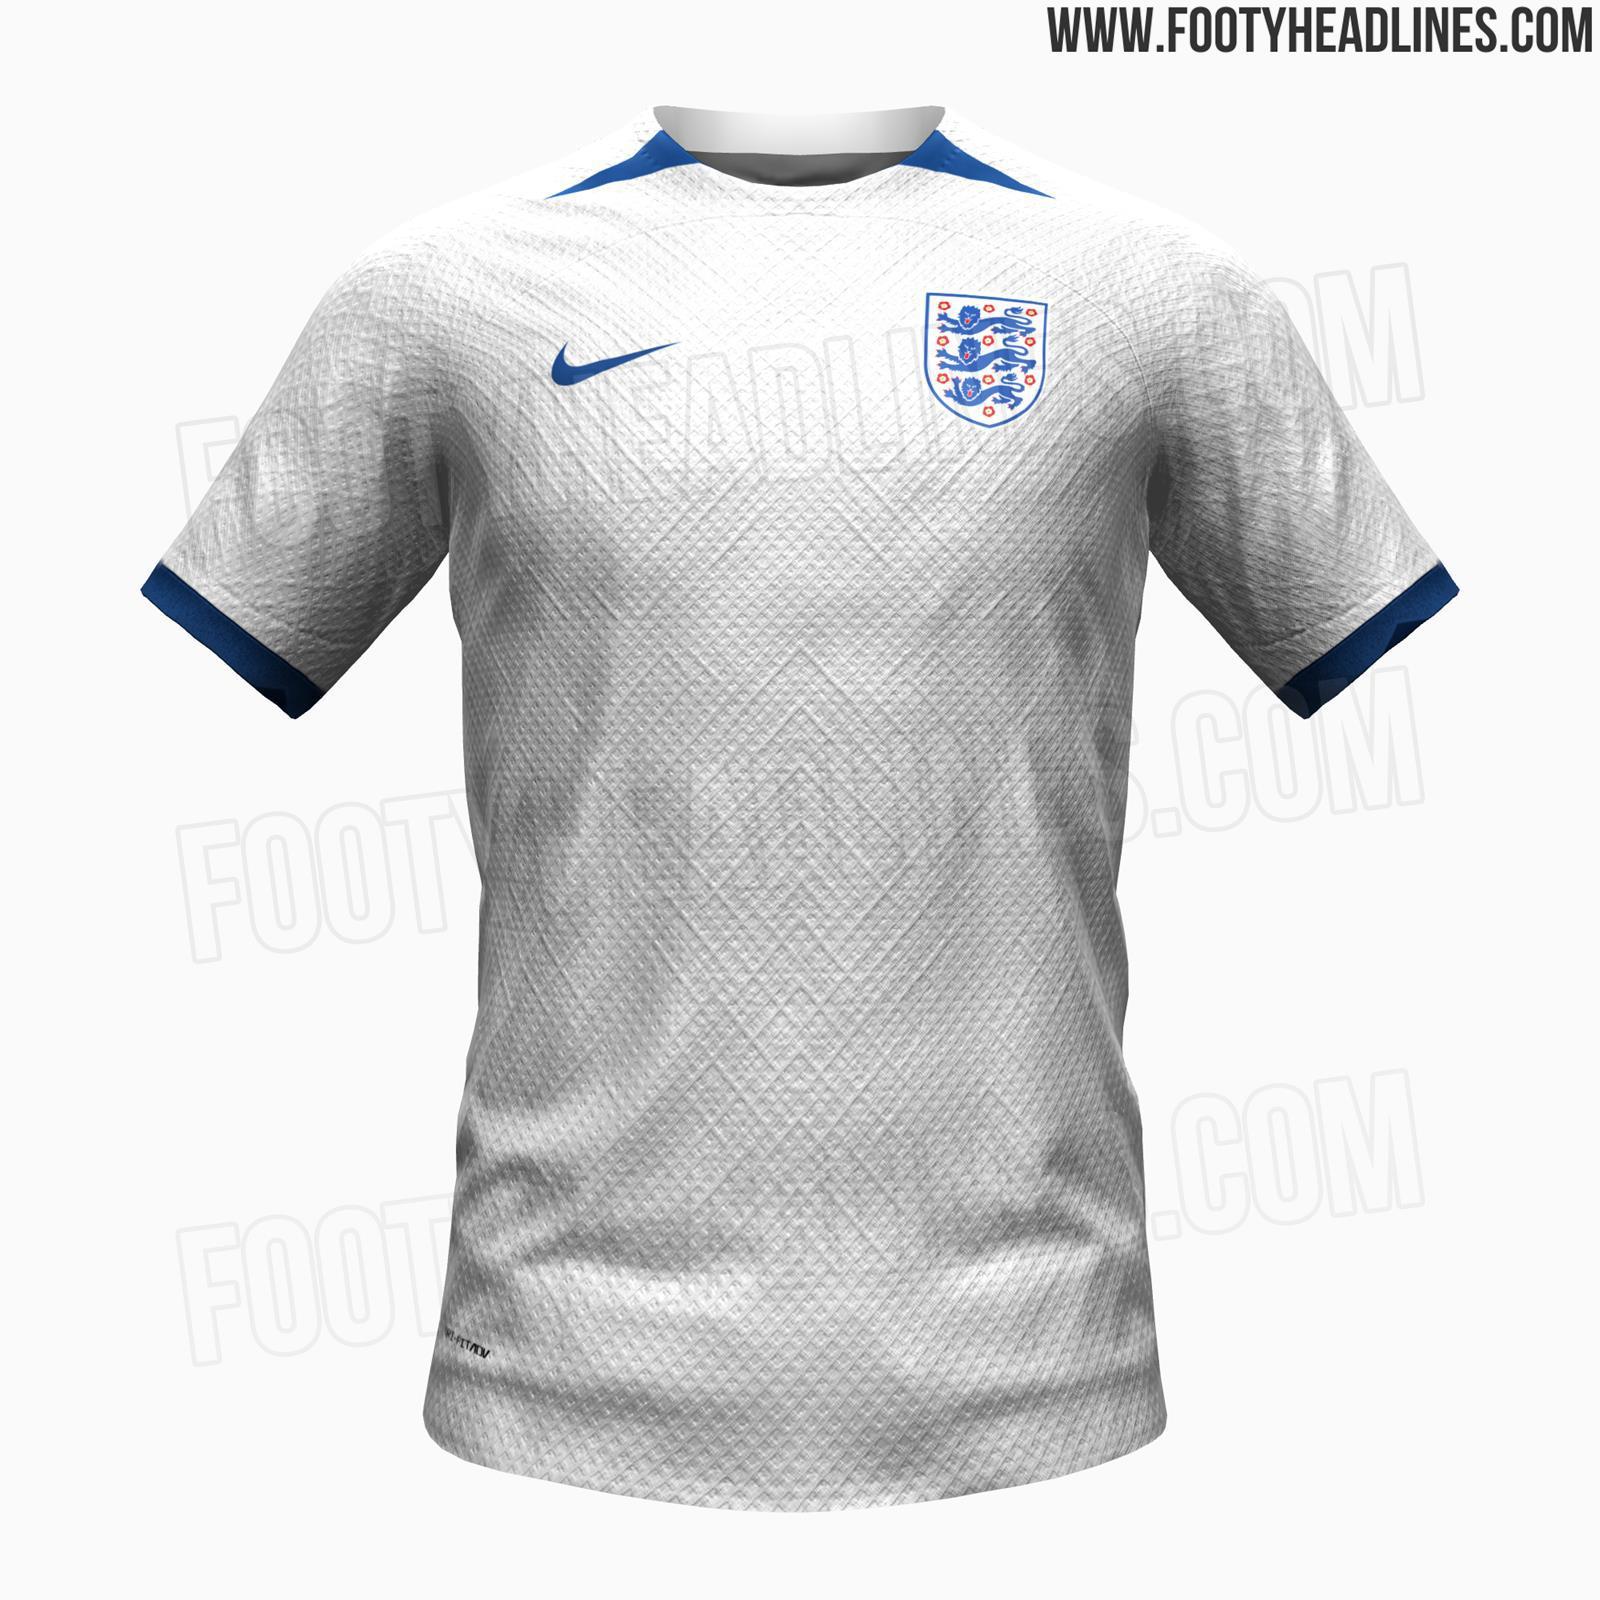 英格兰女足今夏世界杯主场球衣曝光，主白色搭配蓝色细节设计，简约风格。#三狮军团#(1)